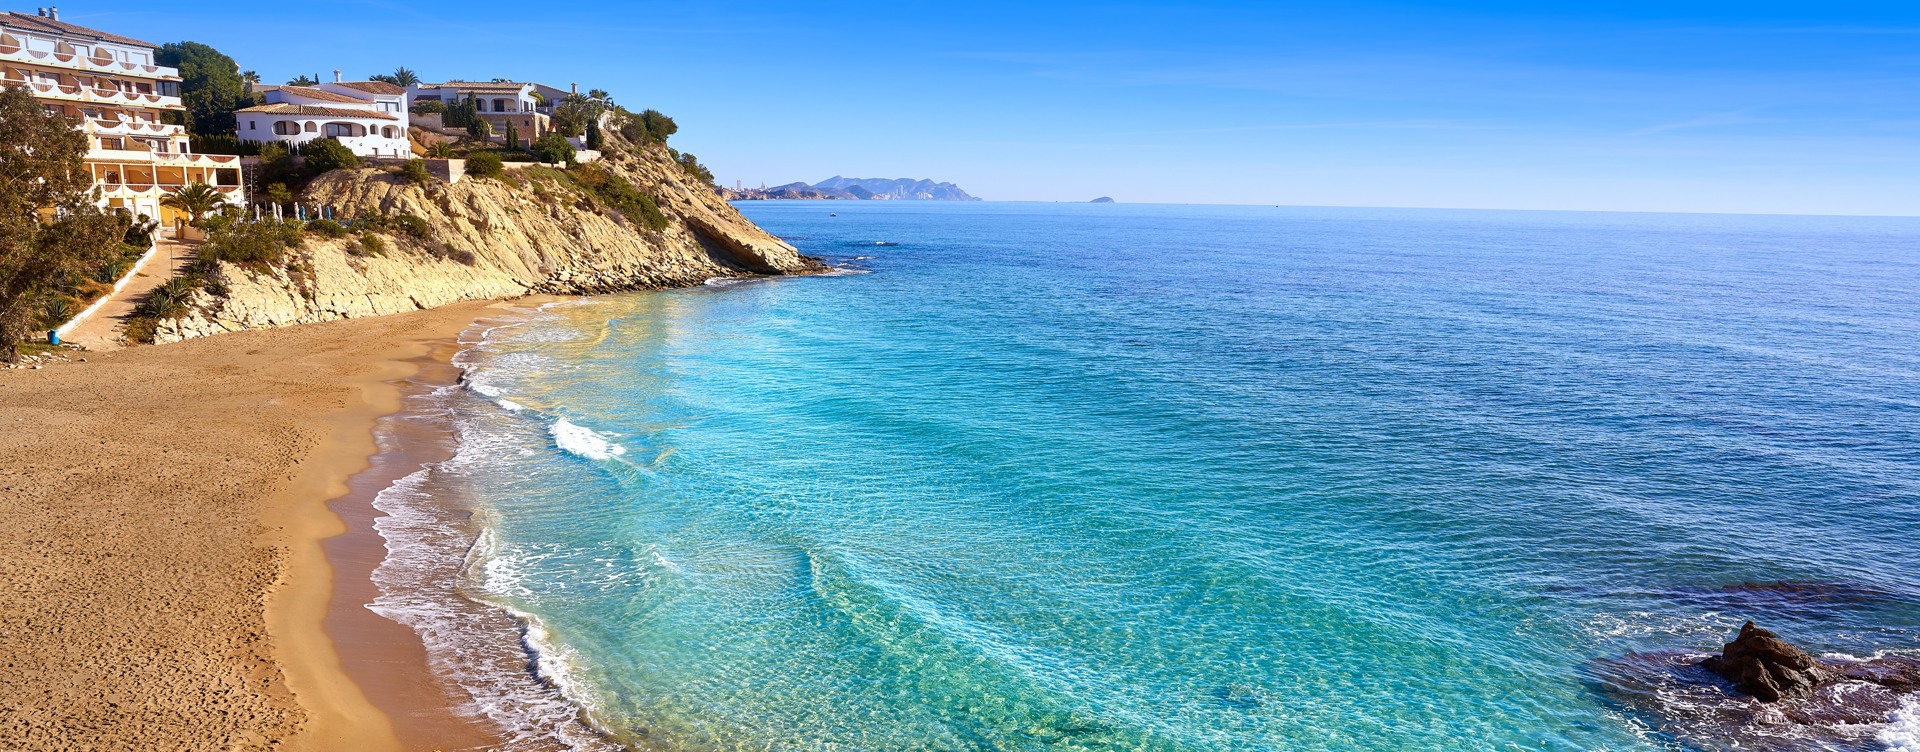 Bezoek de mooiste baaitjes 
en stranden aan de Spaanse kust